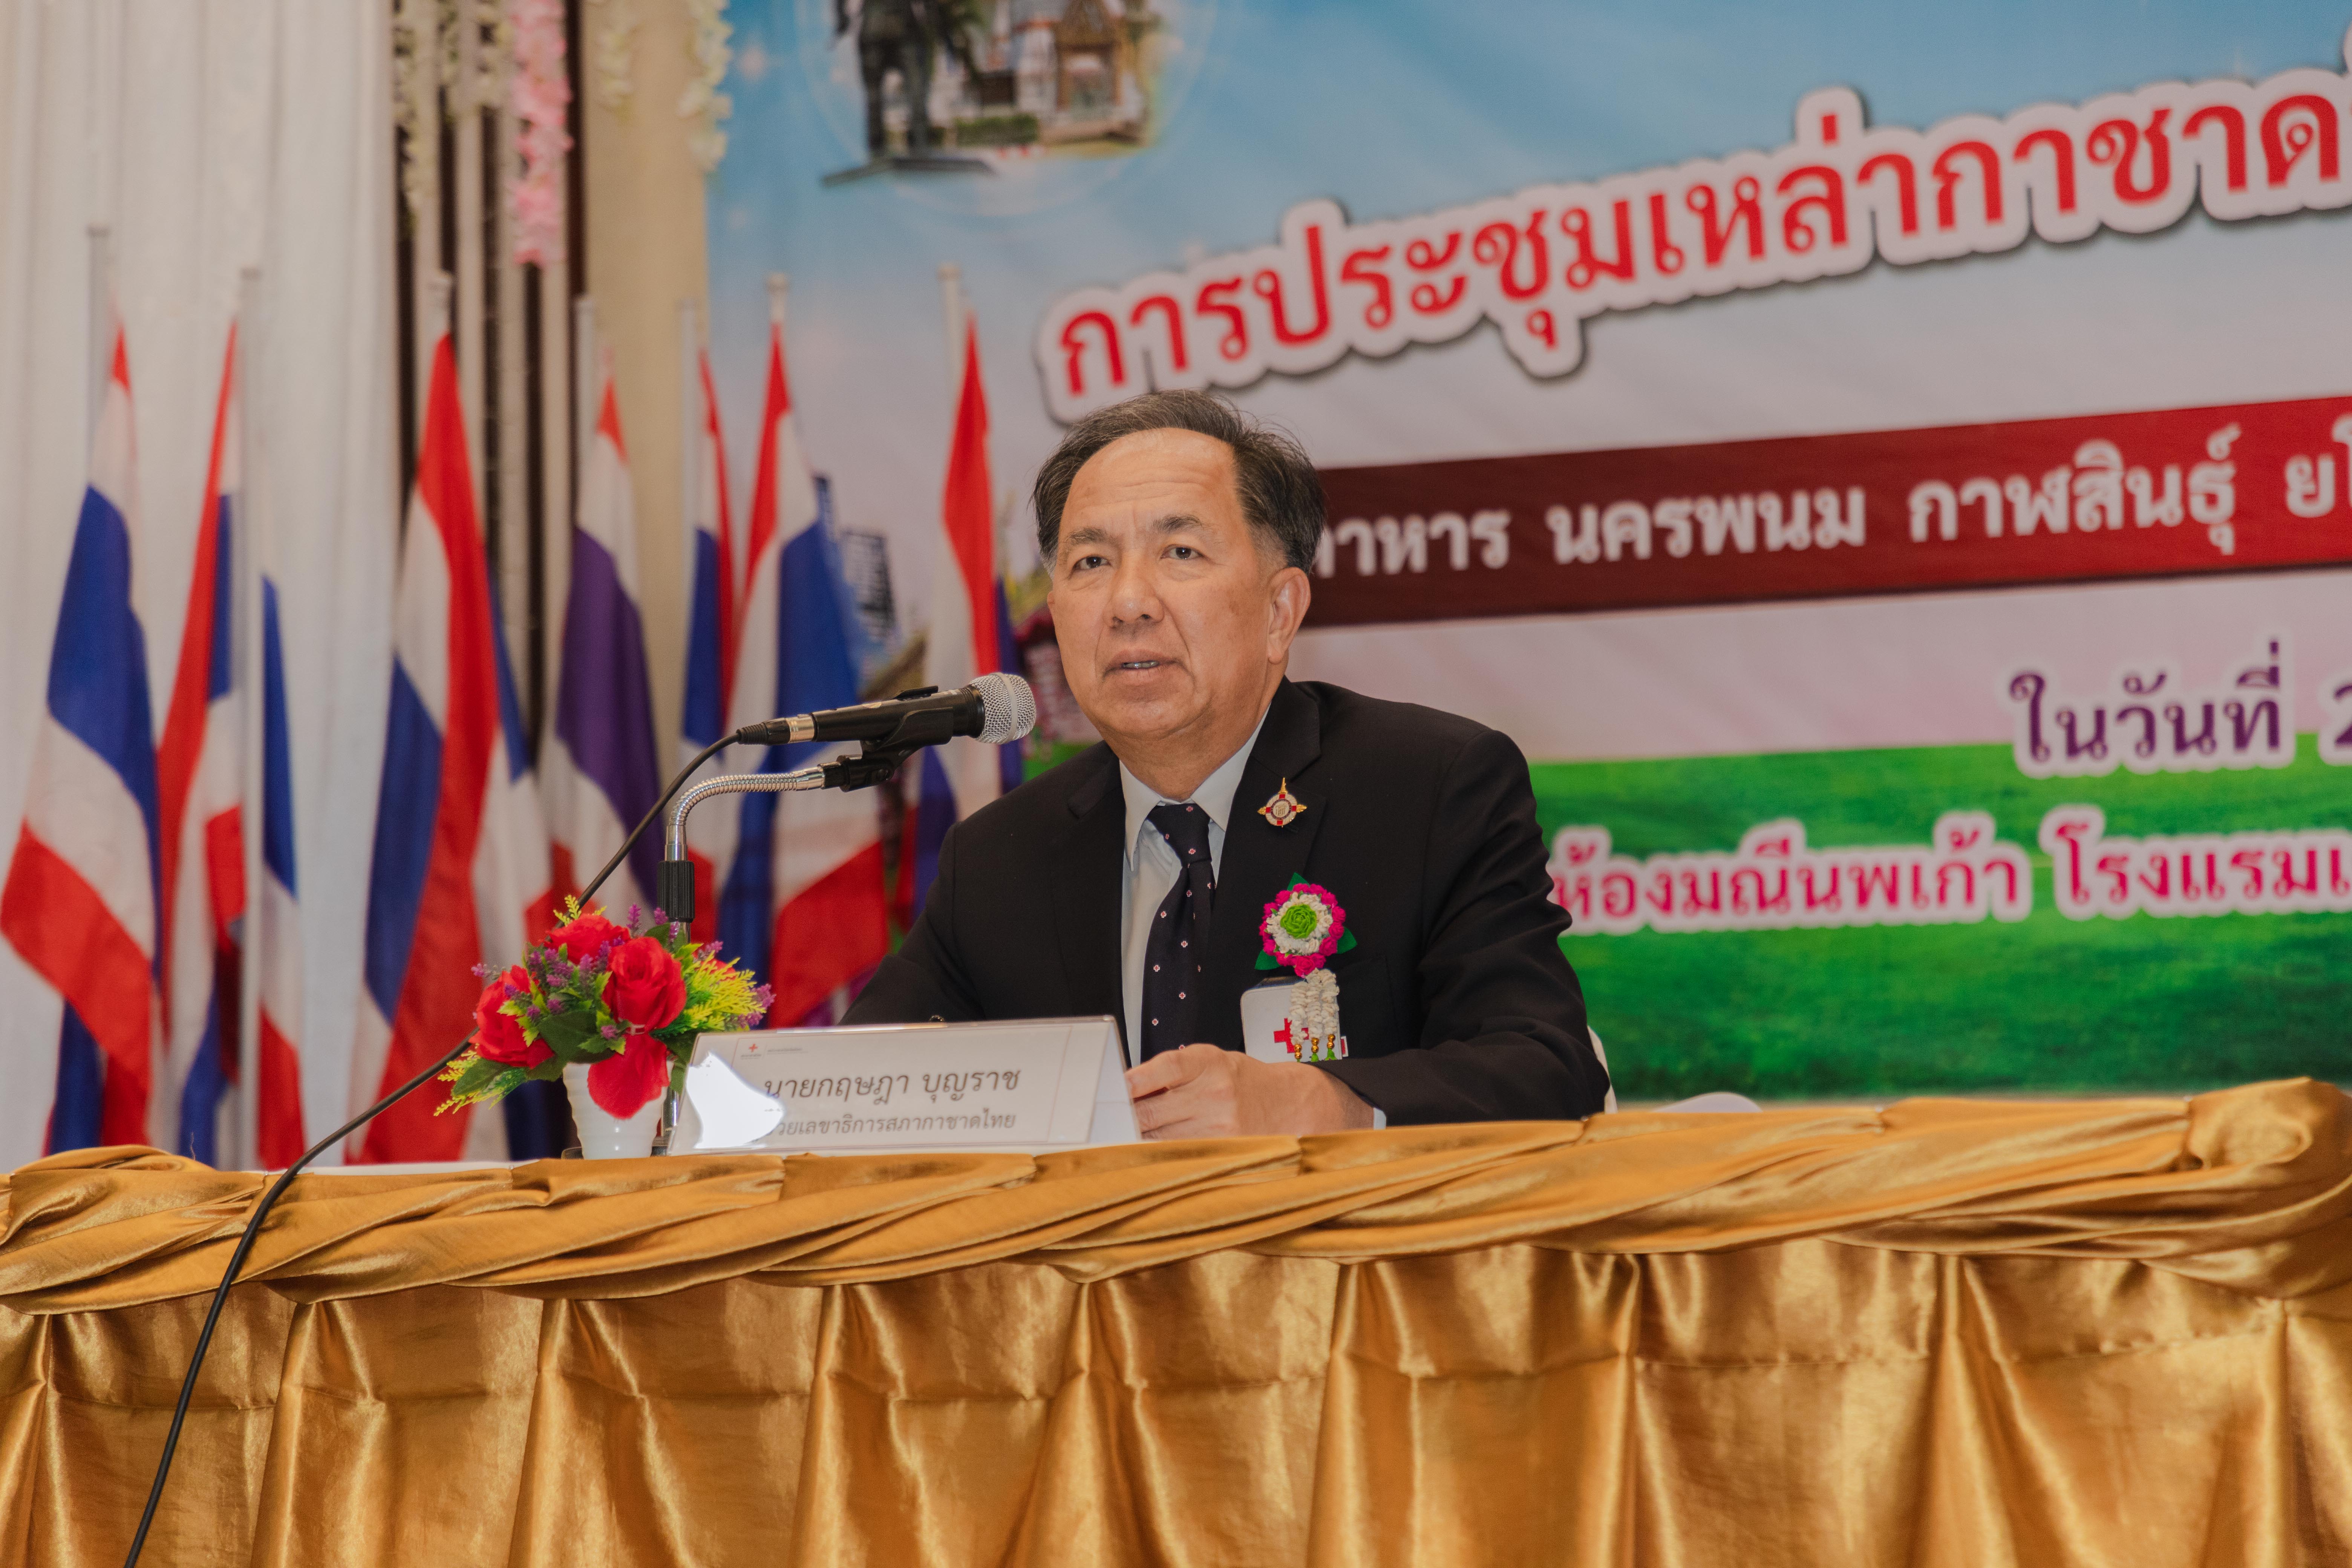 เหล่ากาชาดจังหวัดยโสธร เป็นเจ้าภาพการประชุมเหล่ากาชาดจังหวัด ภาค 7  ครั้งที่ 1 ประจำปี 2567 เพื่อติดตามภารกิจของเหล่ากาชาดและรับทราบนโยบายของสภากาชาดไทย 